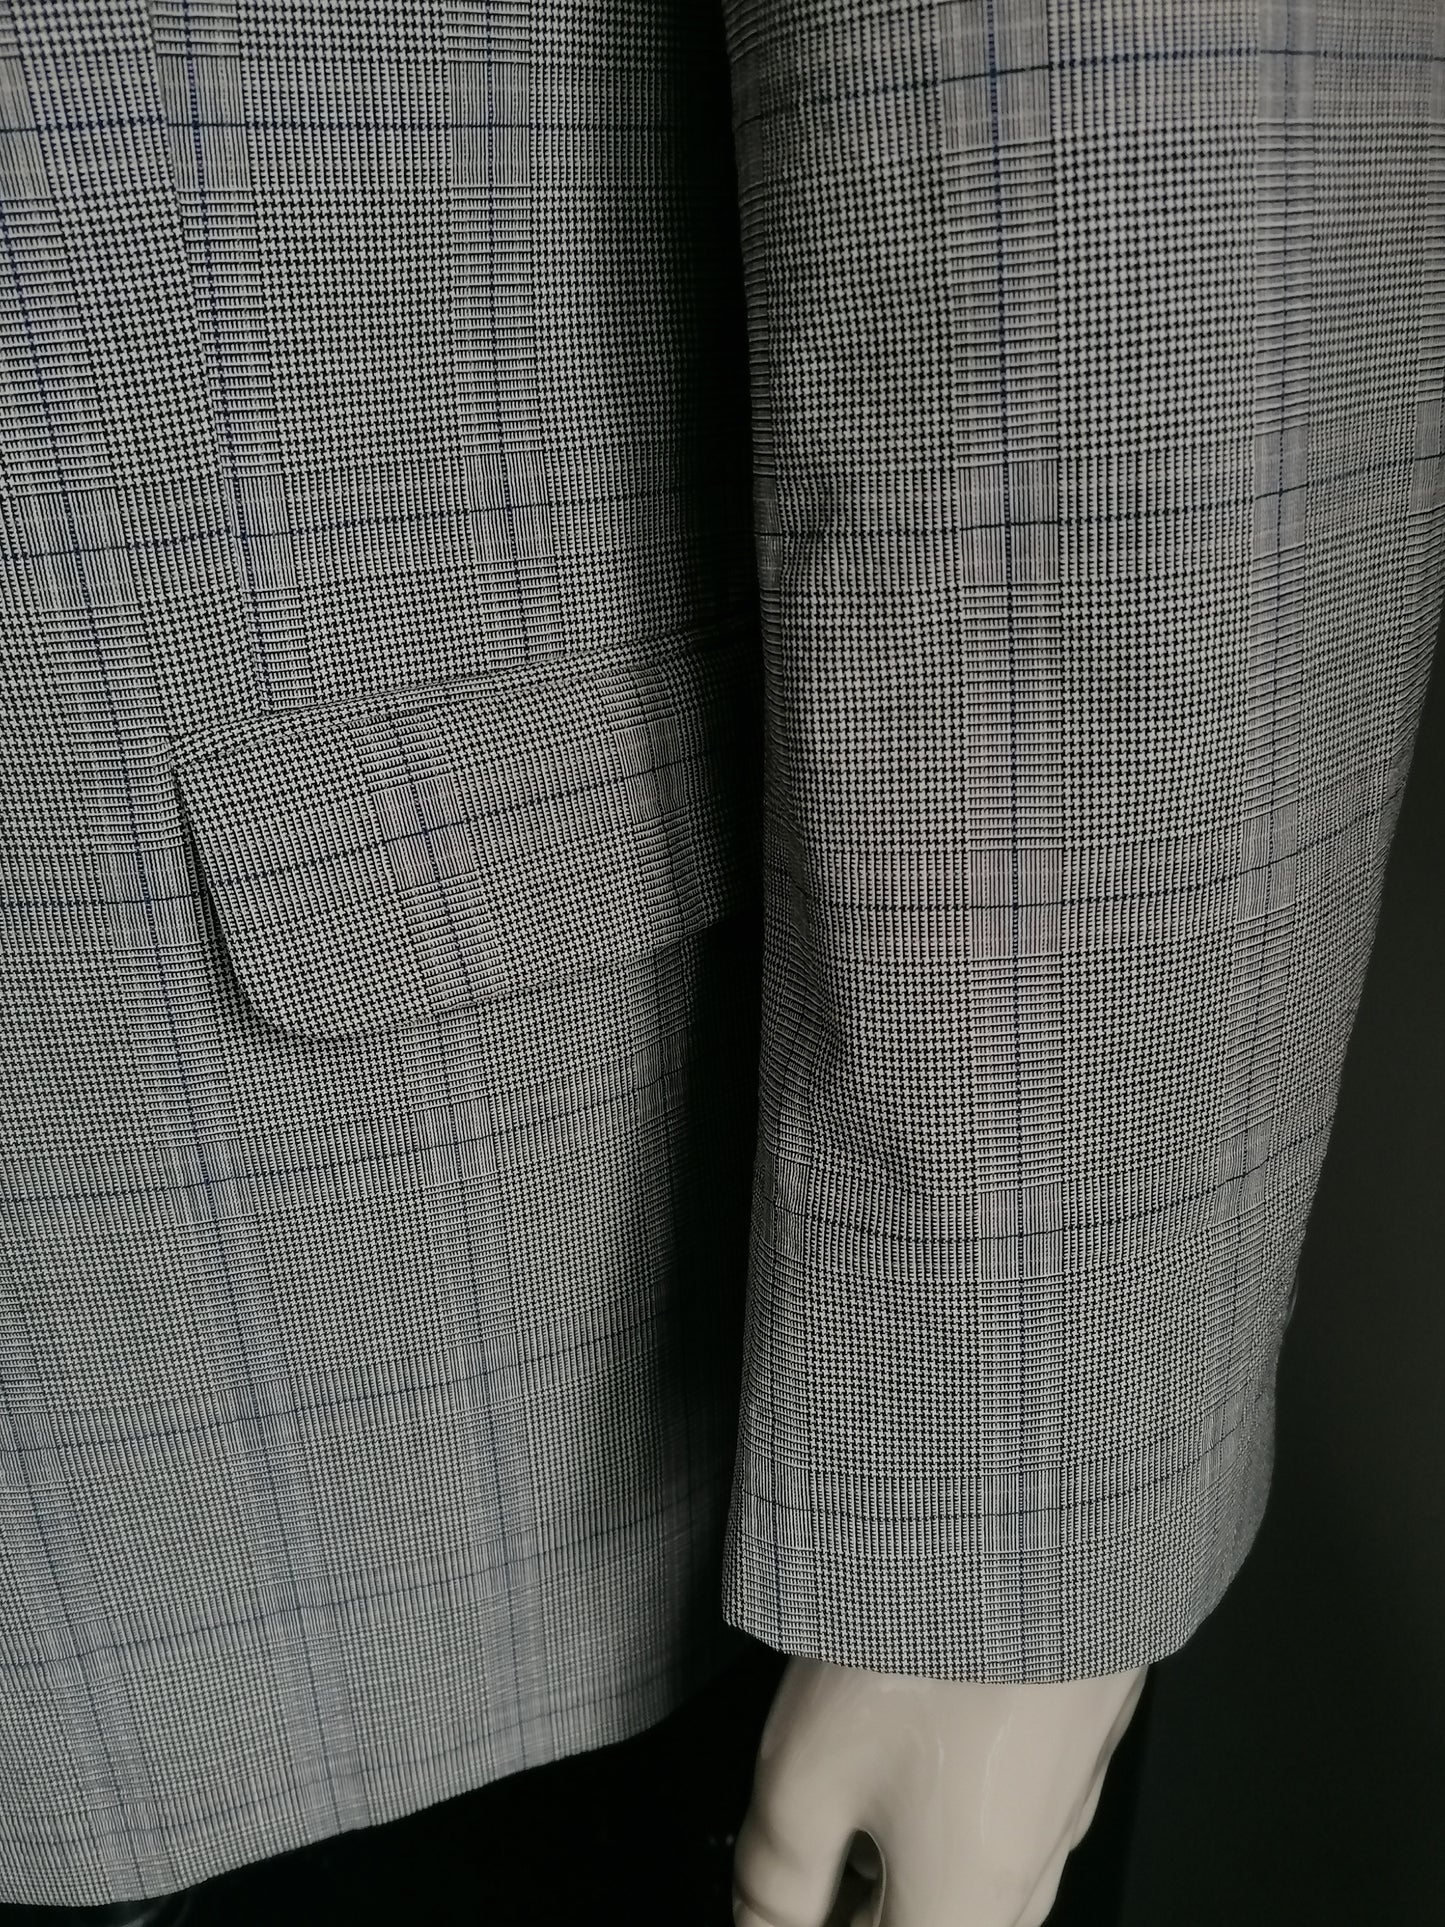 Giacca Bogart Woolen. Blu nero grigio controllato. Dimensione 27 (54 / L) 57% lana.